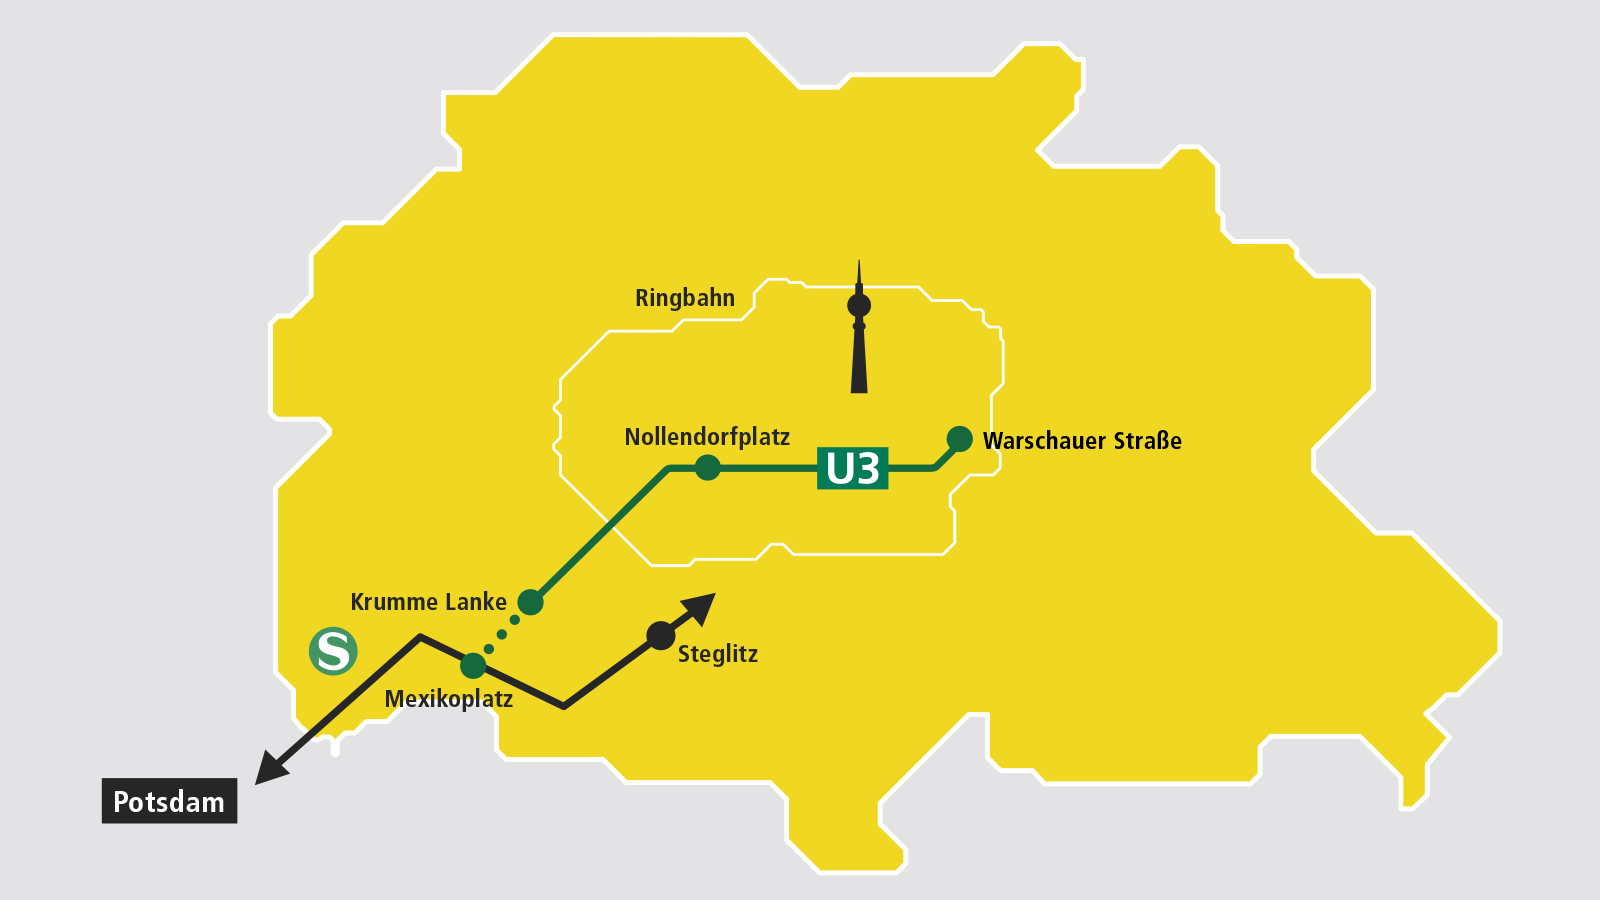 Gelbe Grafik, die eine stark reduzierte Karte Berlins mit dem Fernsehturm zeigt. Eine grüne Linie führt von den Stationspunkten Warschauer Straße im Osten (rechts) über den Nollendorfplatz (Mitte) bis zur Krummen Lanke (links unten). Eine ab Krumme Lanke gepunktete grüne Linie zeigt die geplante Strecke bis Mexikoplatz. Am Stationspunkt Mexikoplatz kreuzt eine schwarze Linie, die für die S-Bahn-Linie S1 zwischen Potsdam und über Steglitz hinaus bis Oranienburg steht.